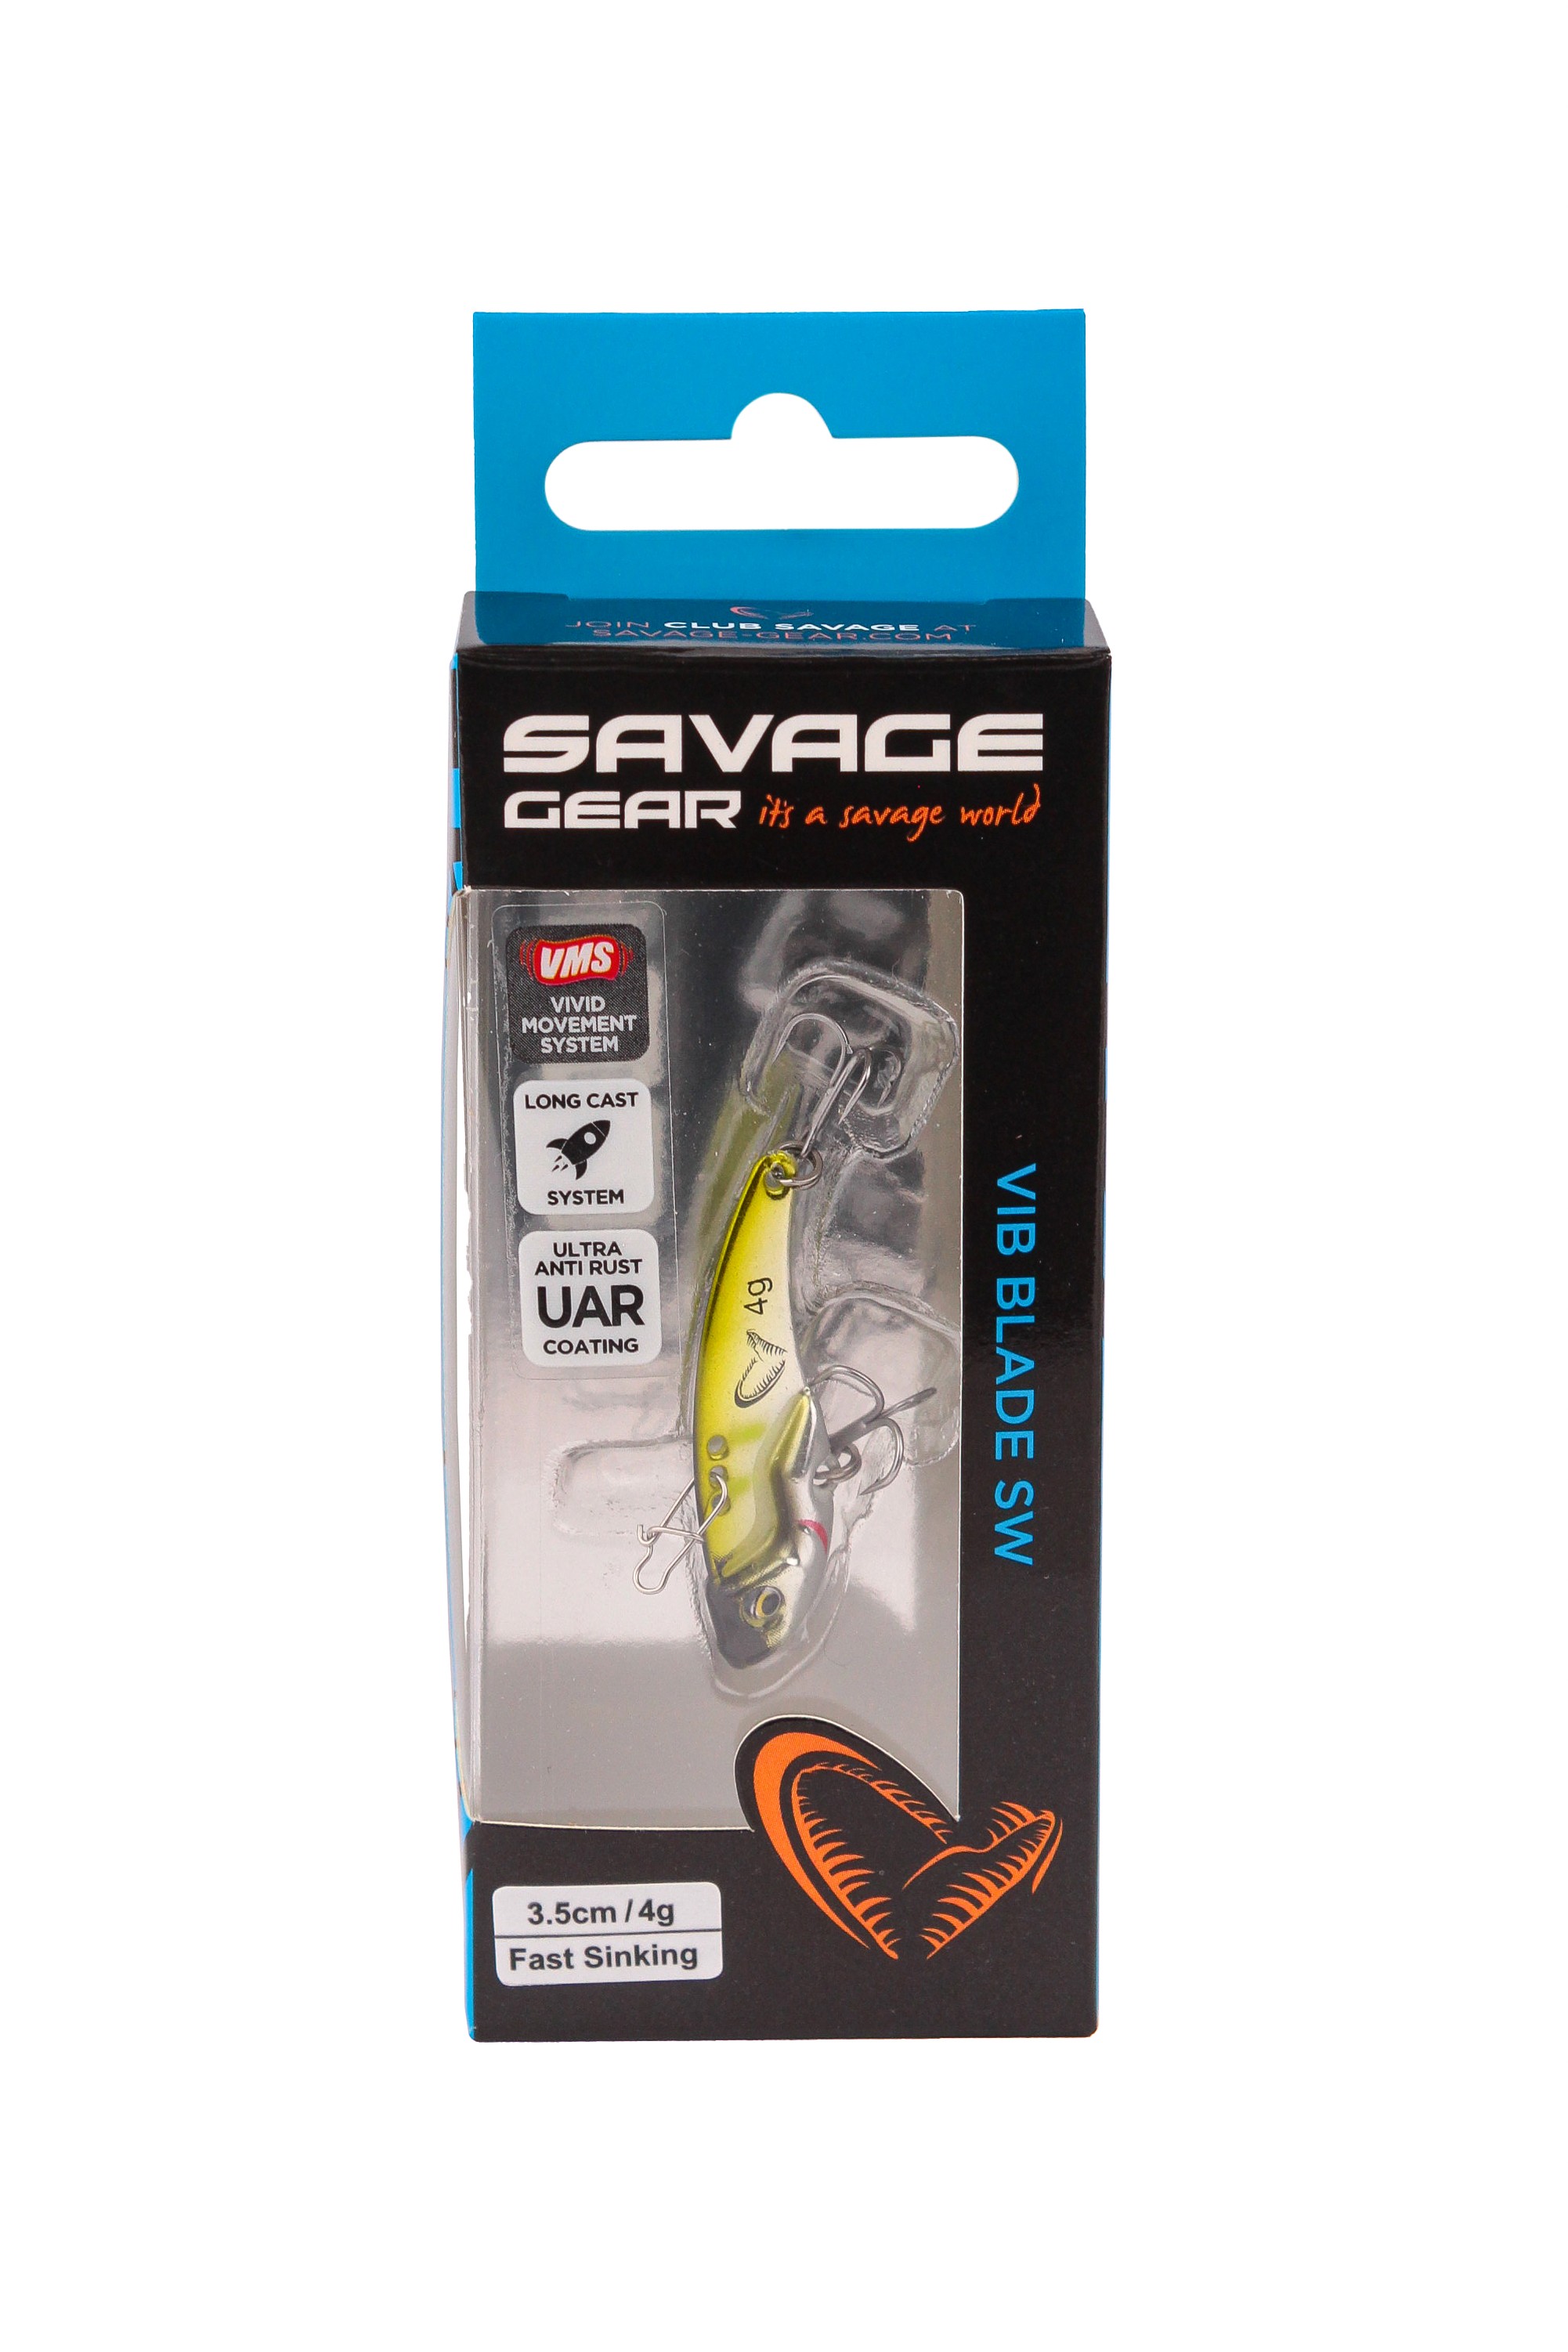 Блесна Savage Gear Vib blade SW 3,5см 4гр fast sinking mirror ayu - фото 1